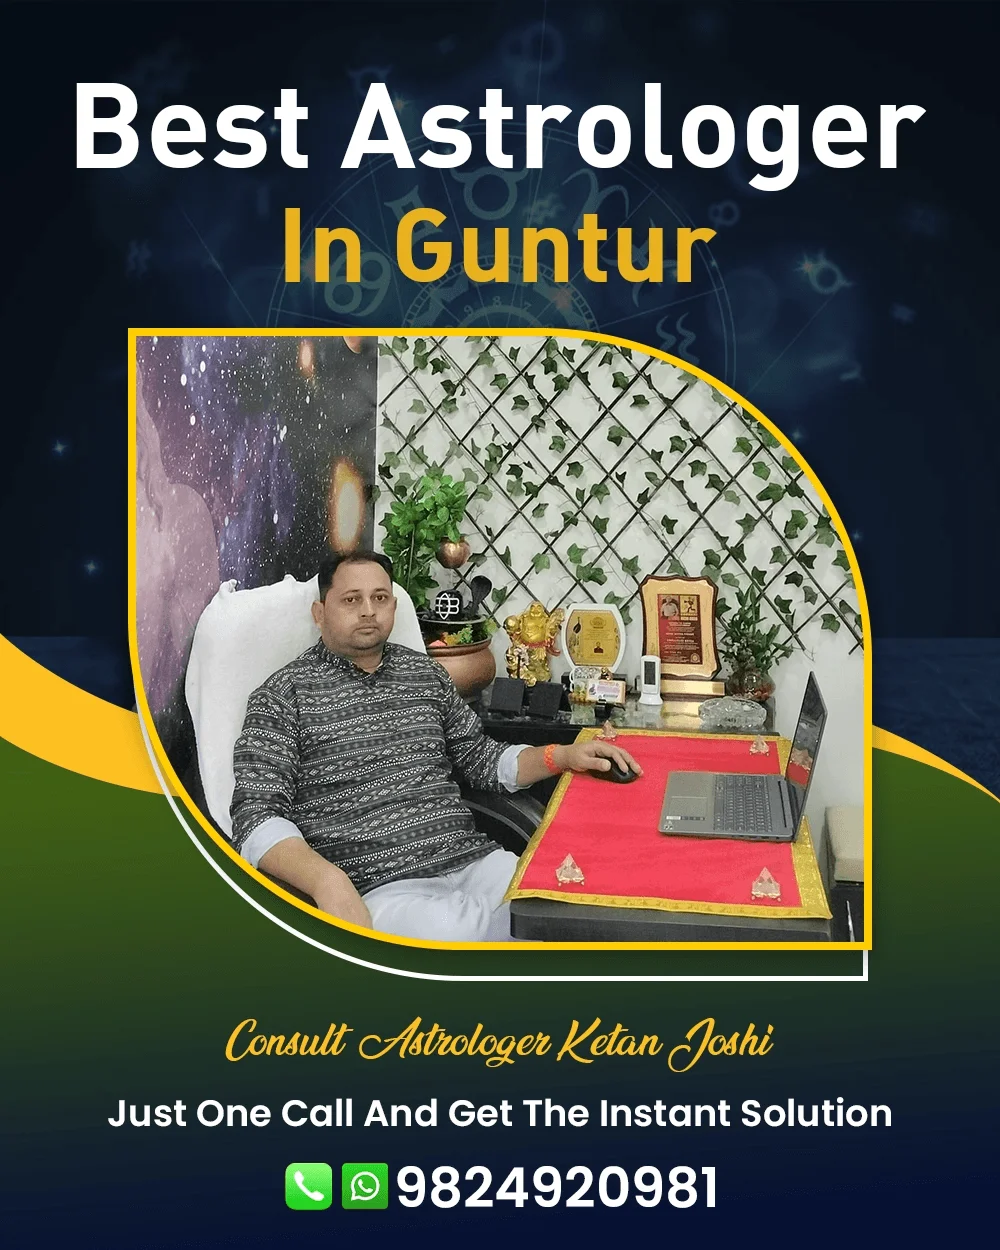 Best Astrologer In Guntur